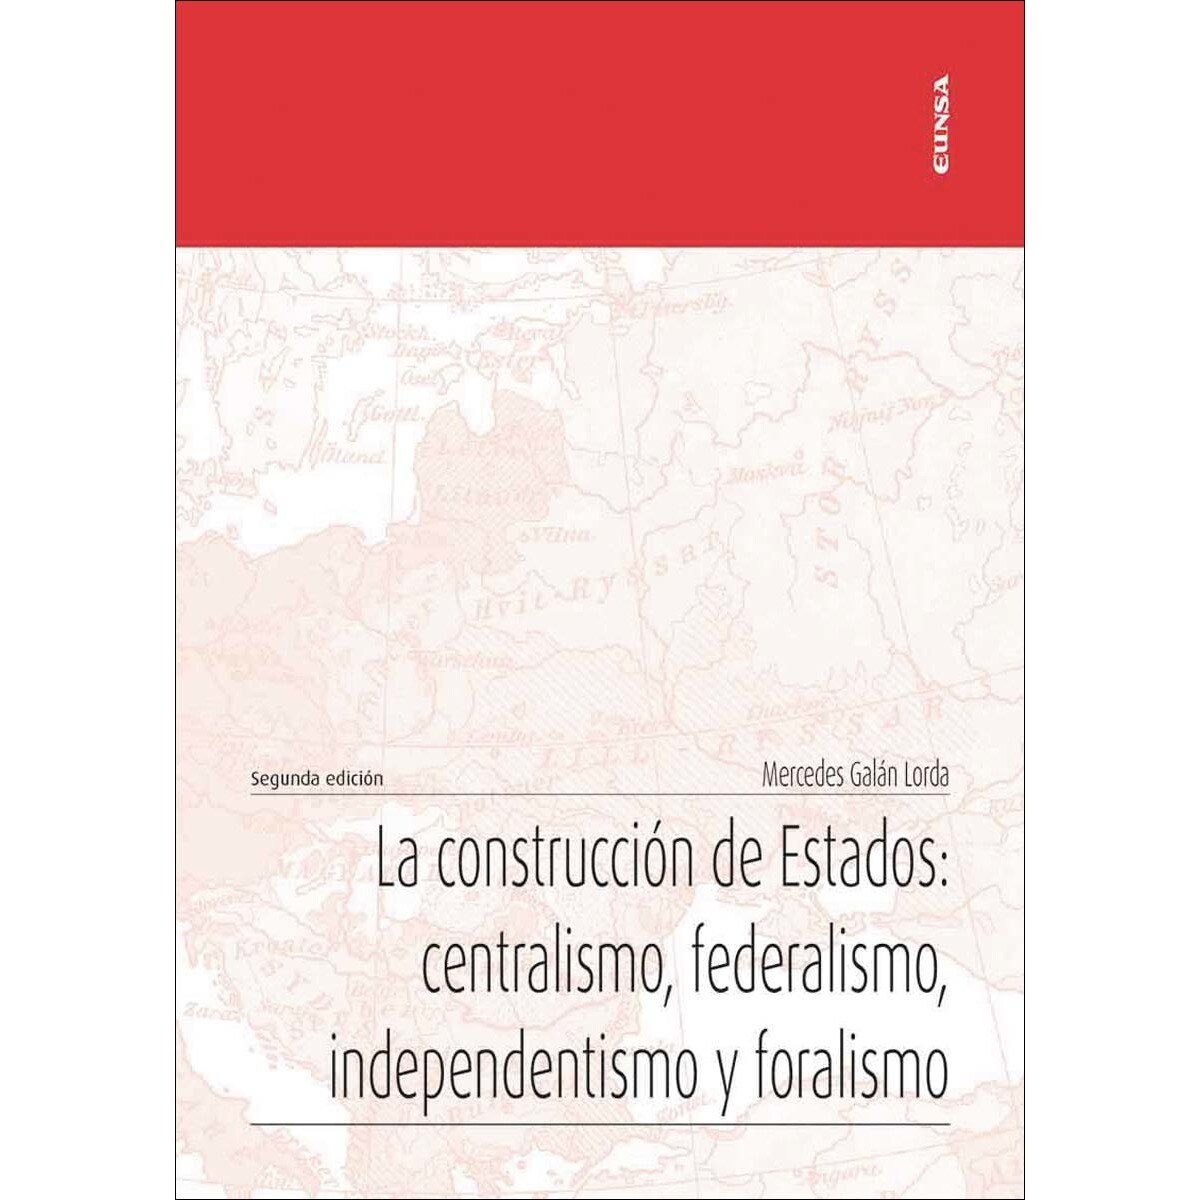 Imagen de portada del libro La construcción de Estados: centralismo, federalismo, independentismo y foralismo